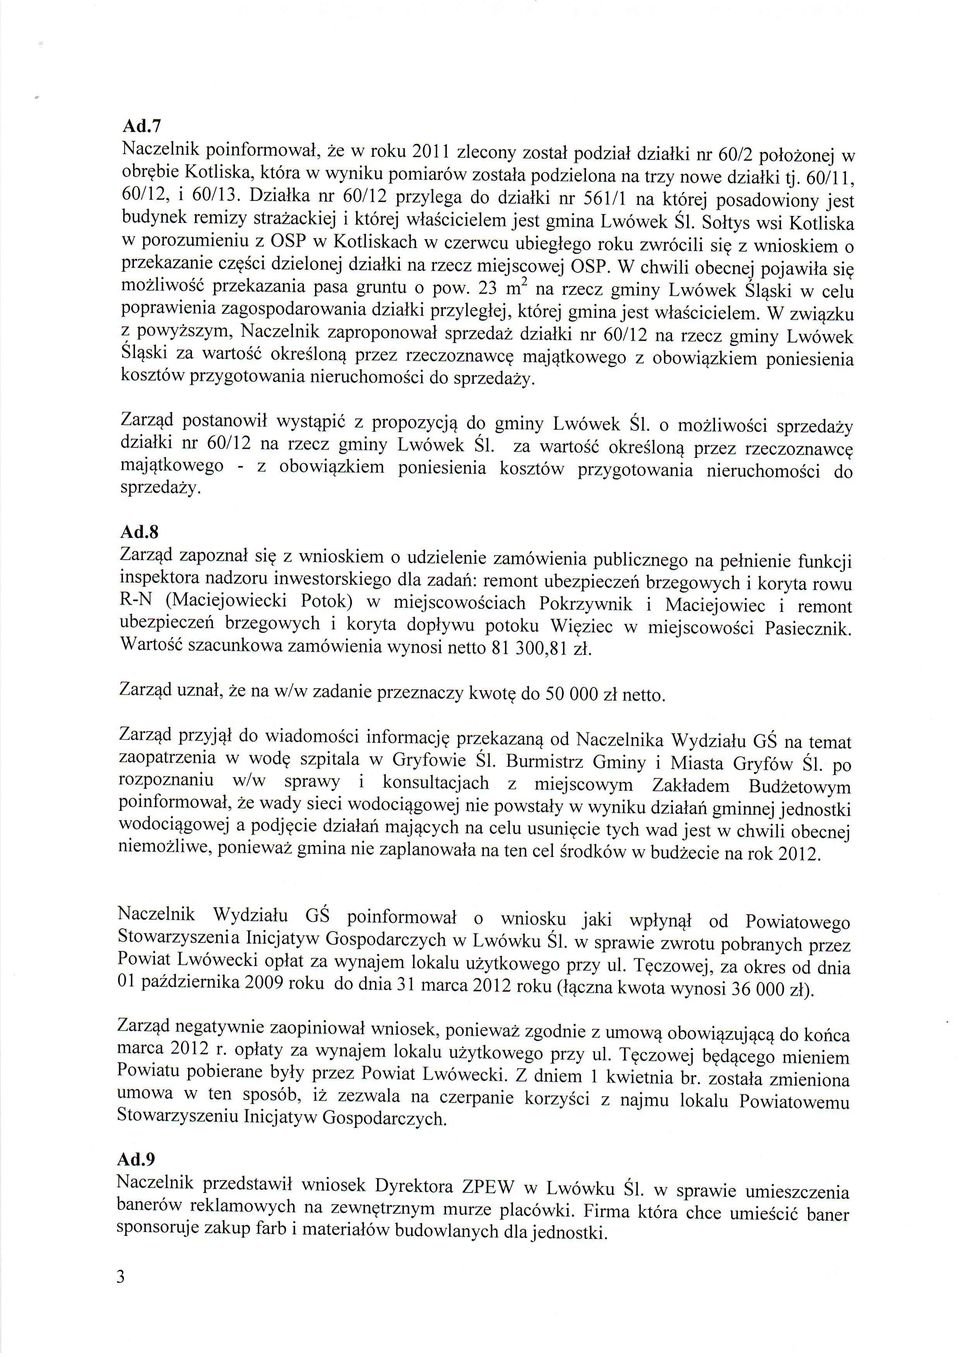 3orys wsi Kotliska w porozumieniu z OSP w Kotliskach w czerwcu ubieglego roku zwr6cili sig z wnioskiem o przekazanie czgsci dzielonej dziatki narzecz miejscowej OSP.